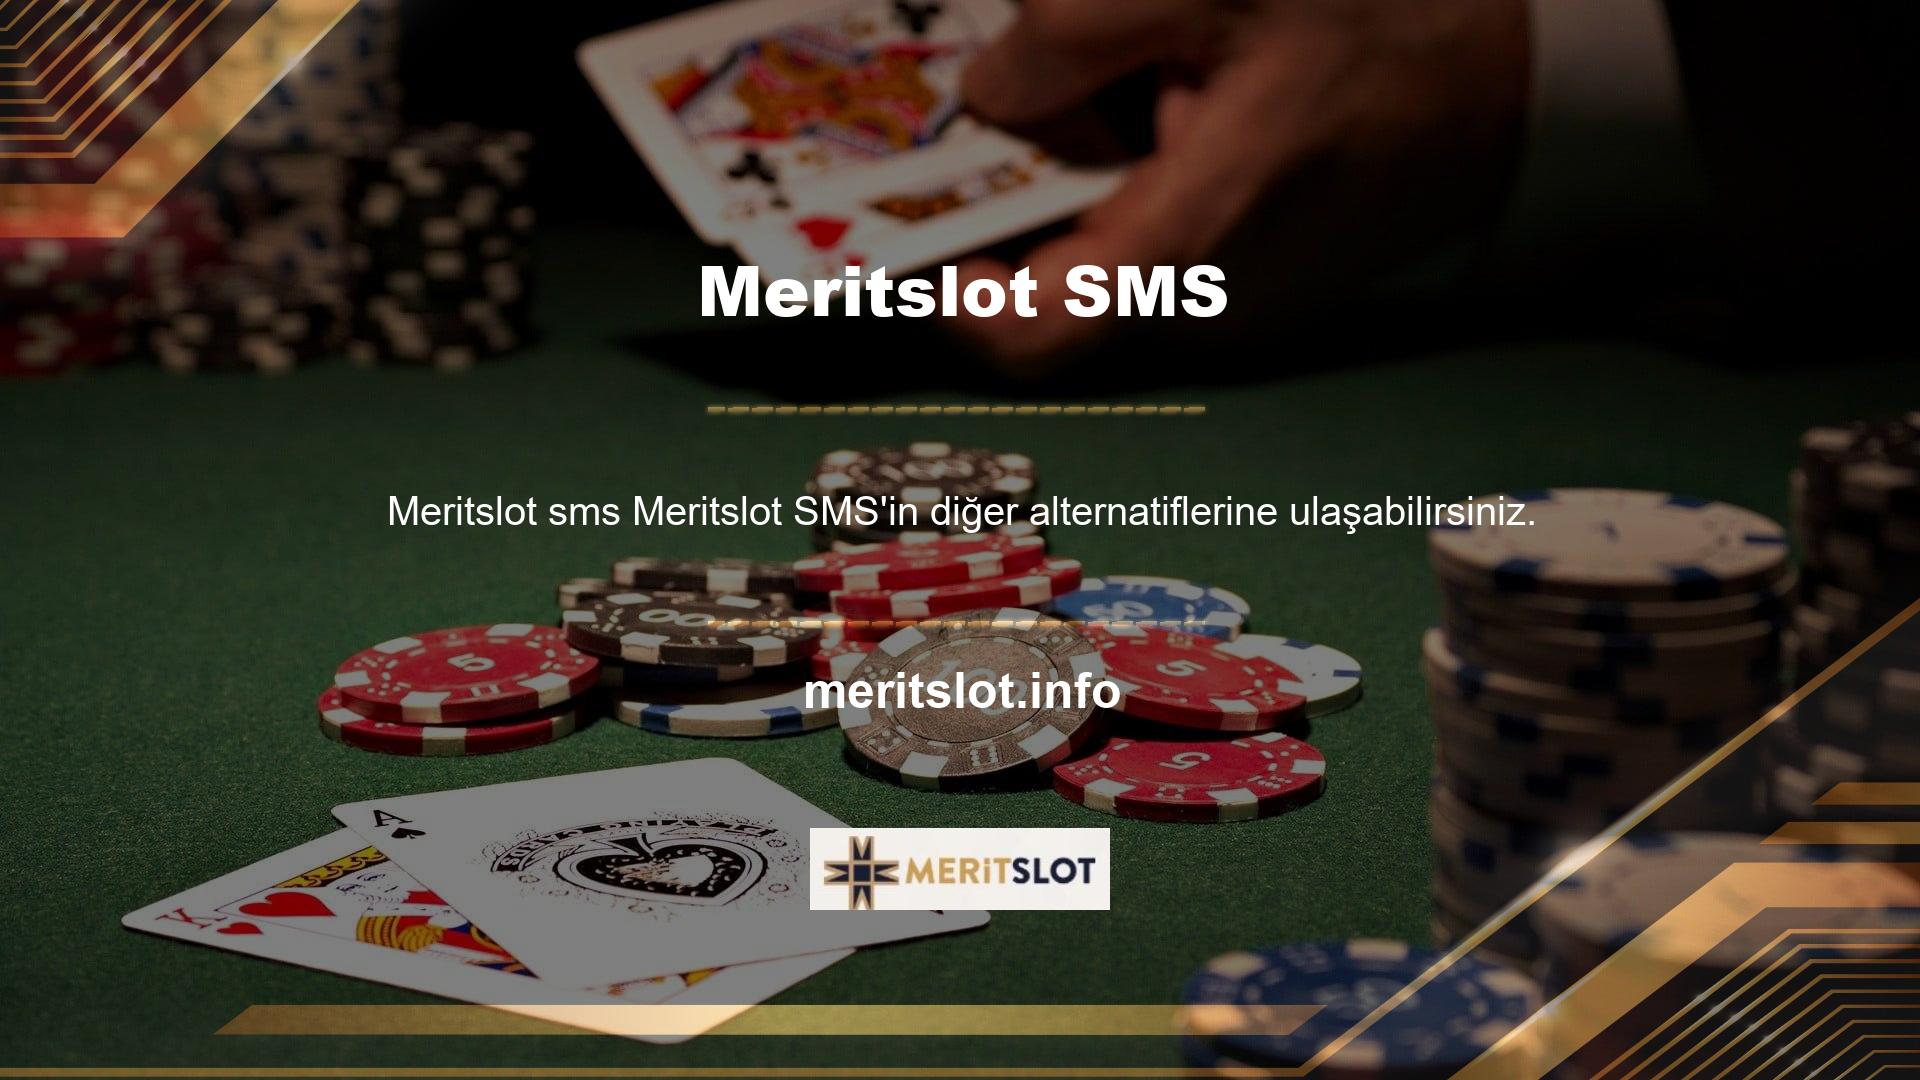 Meritslot ayrıca üst düzey mobil oyun da sunuyor